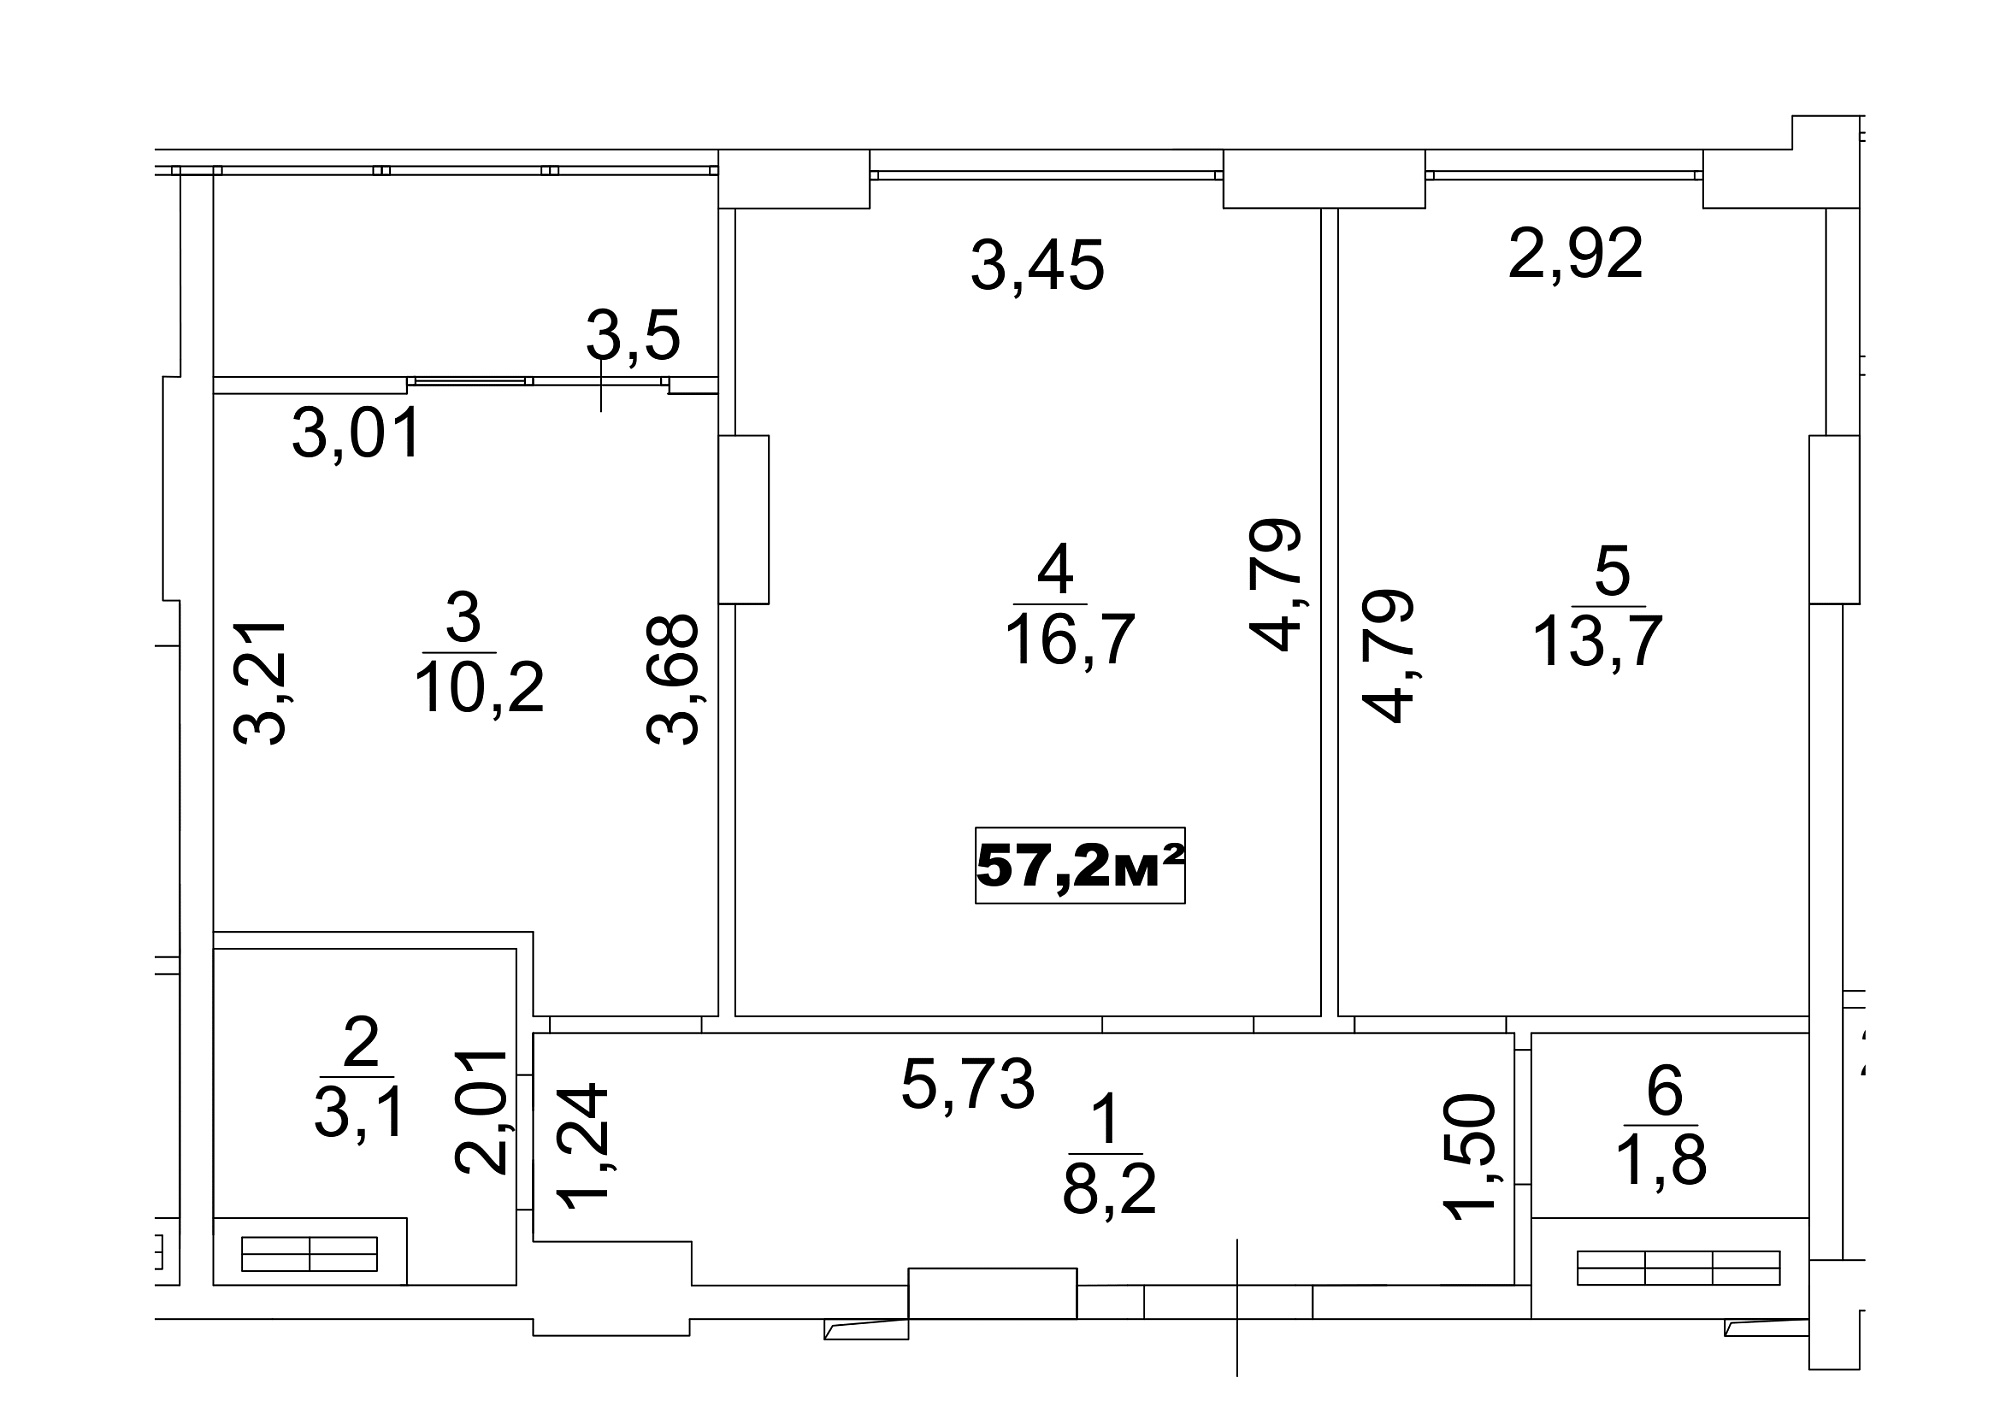 Планировка 2-к квартира площей 57.2м2, AB-13-08/00064.